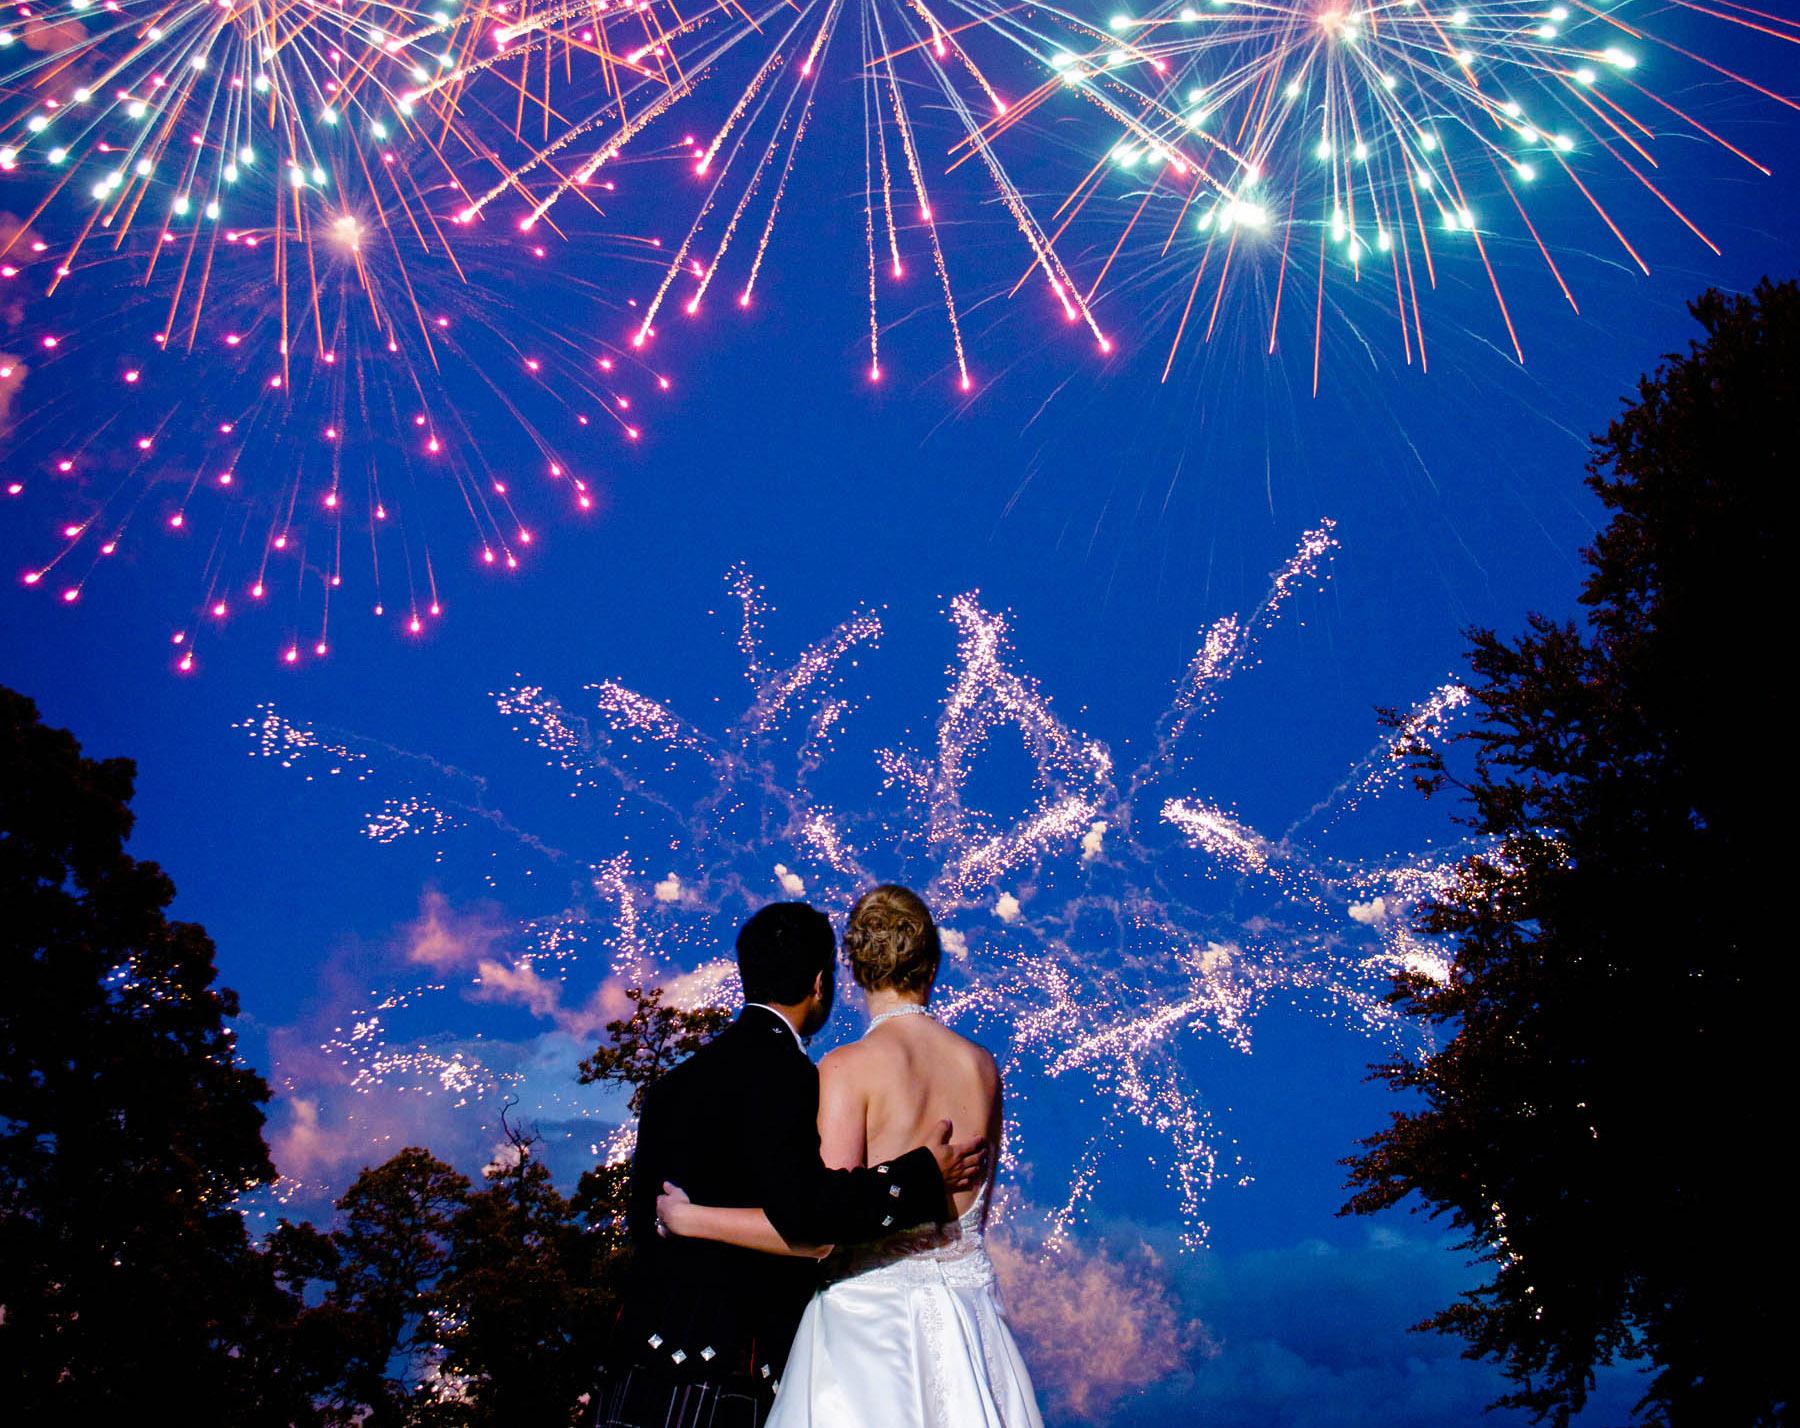 wedding fireworks by 21CC fireworks